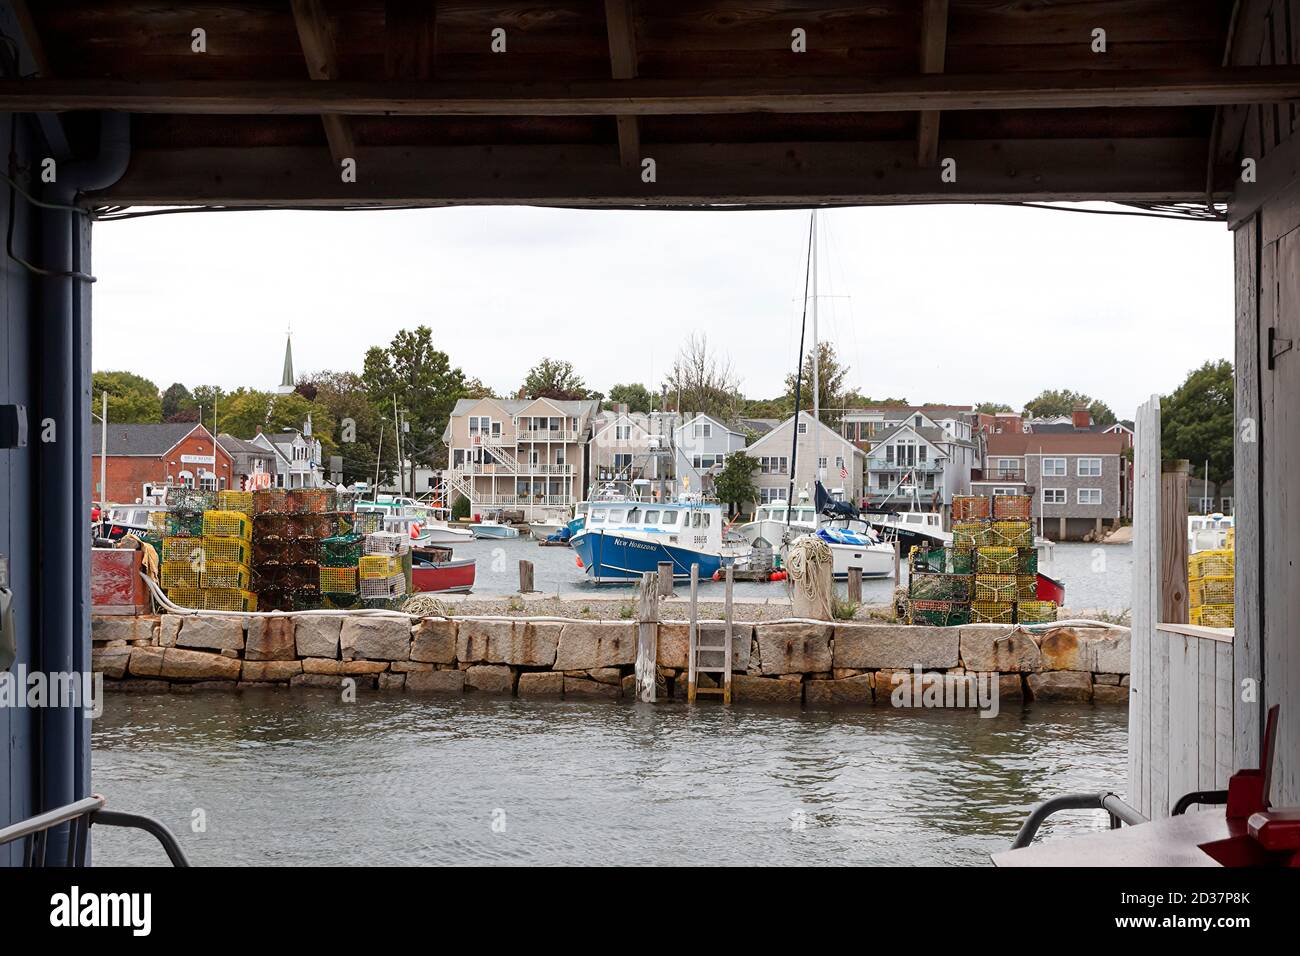 Rockport, attracco/porto/molo del Massachusetts con barche da pesca, barche a vela e trappole per aragoste viste attraverso un sacco di pesca in legno. Foto Stock